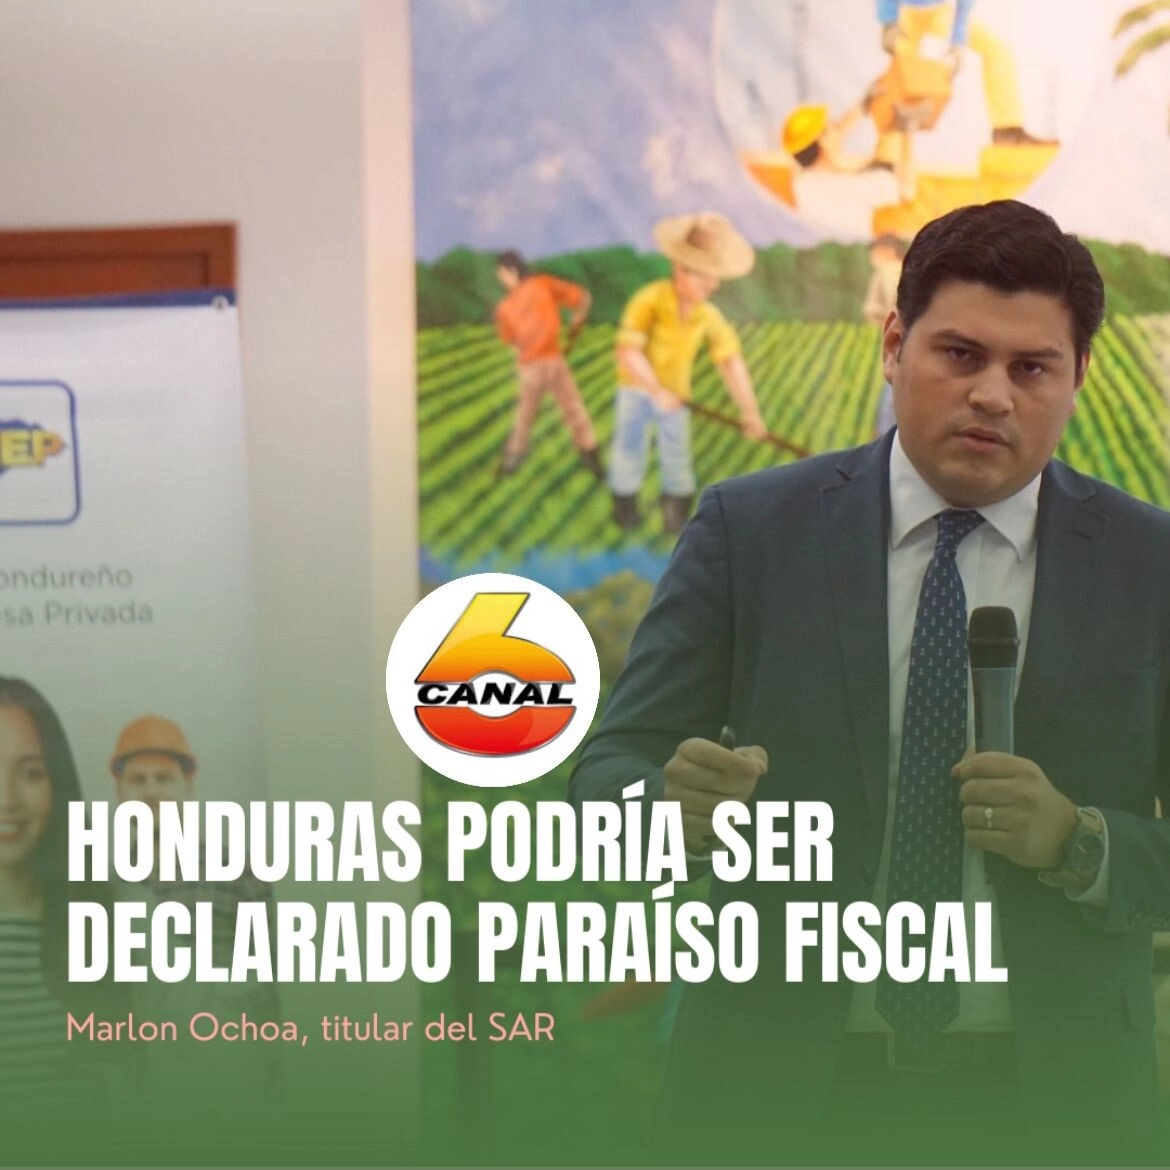 Honduras podría ser declarado paraíso fiscal de no eliminar abusos en exoneraciones fiscales y derogar el secreto bancario